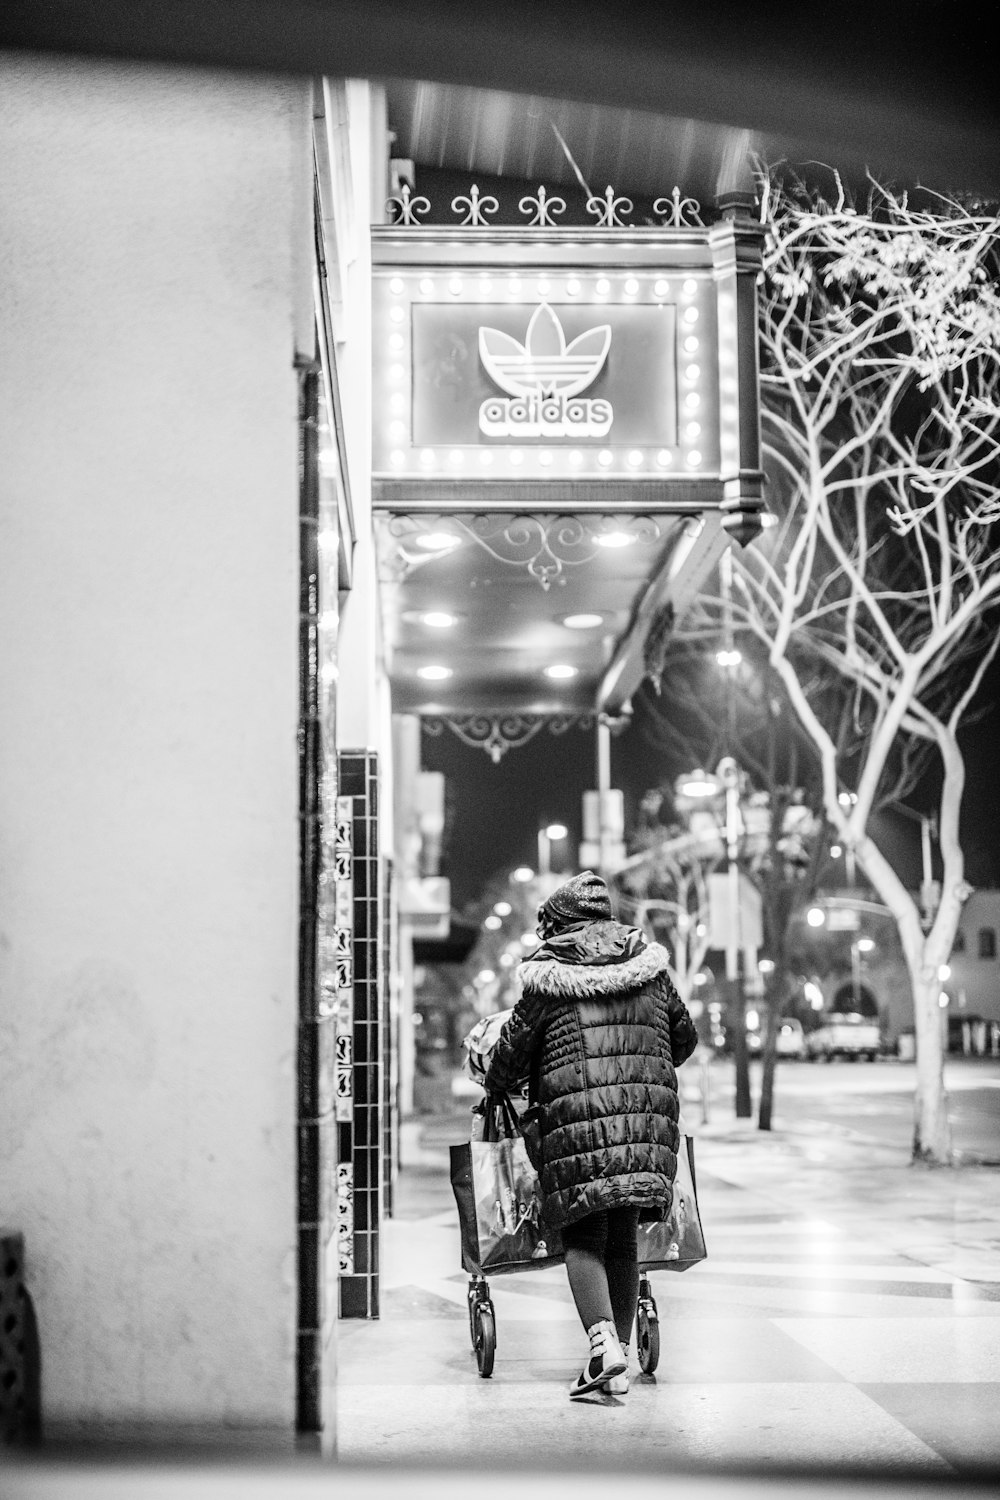 Foto en escala de grises de una persona caminando por la acera cerca de la tienda Adidas